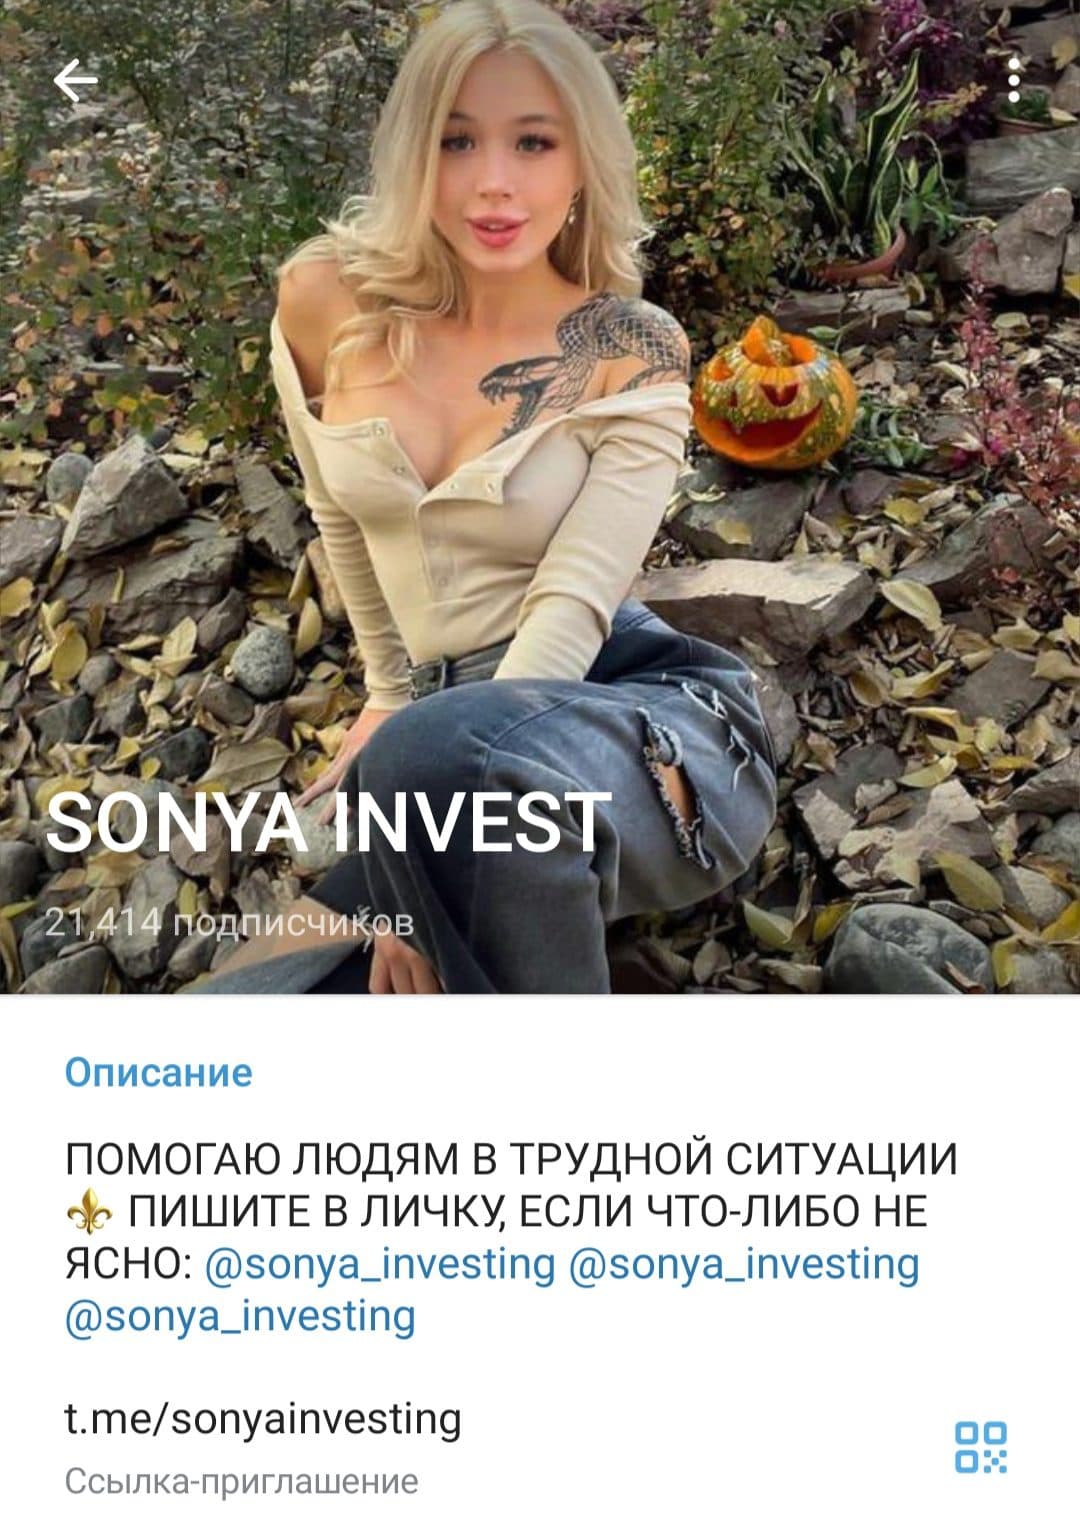 Sonya Invest телеграмм